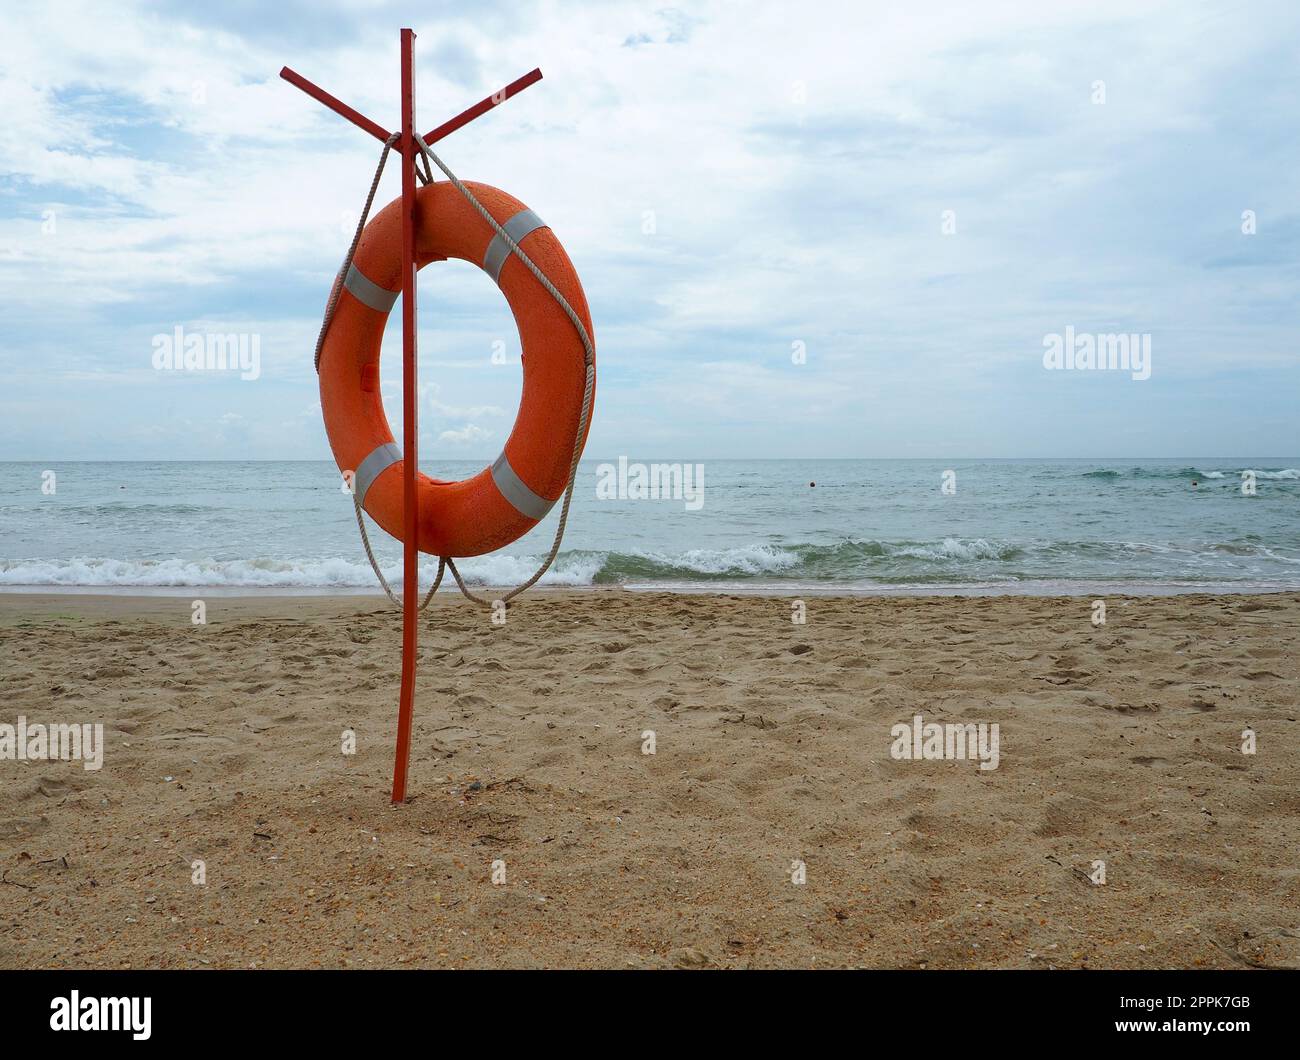 Rettungsschwimmer an einem Sandstrand. Orangefarbener Kreis an einer Stange, um im Meer ertrinkende Menschen zu retten. Rettungspunkt am Ufer. Himmel und Meer im Hintergrund. Stockfoto